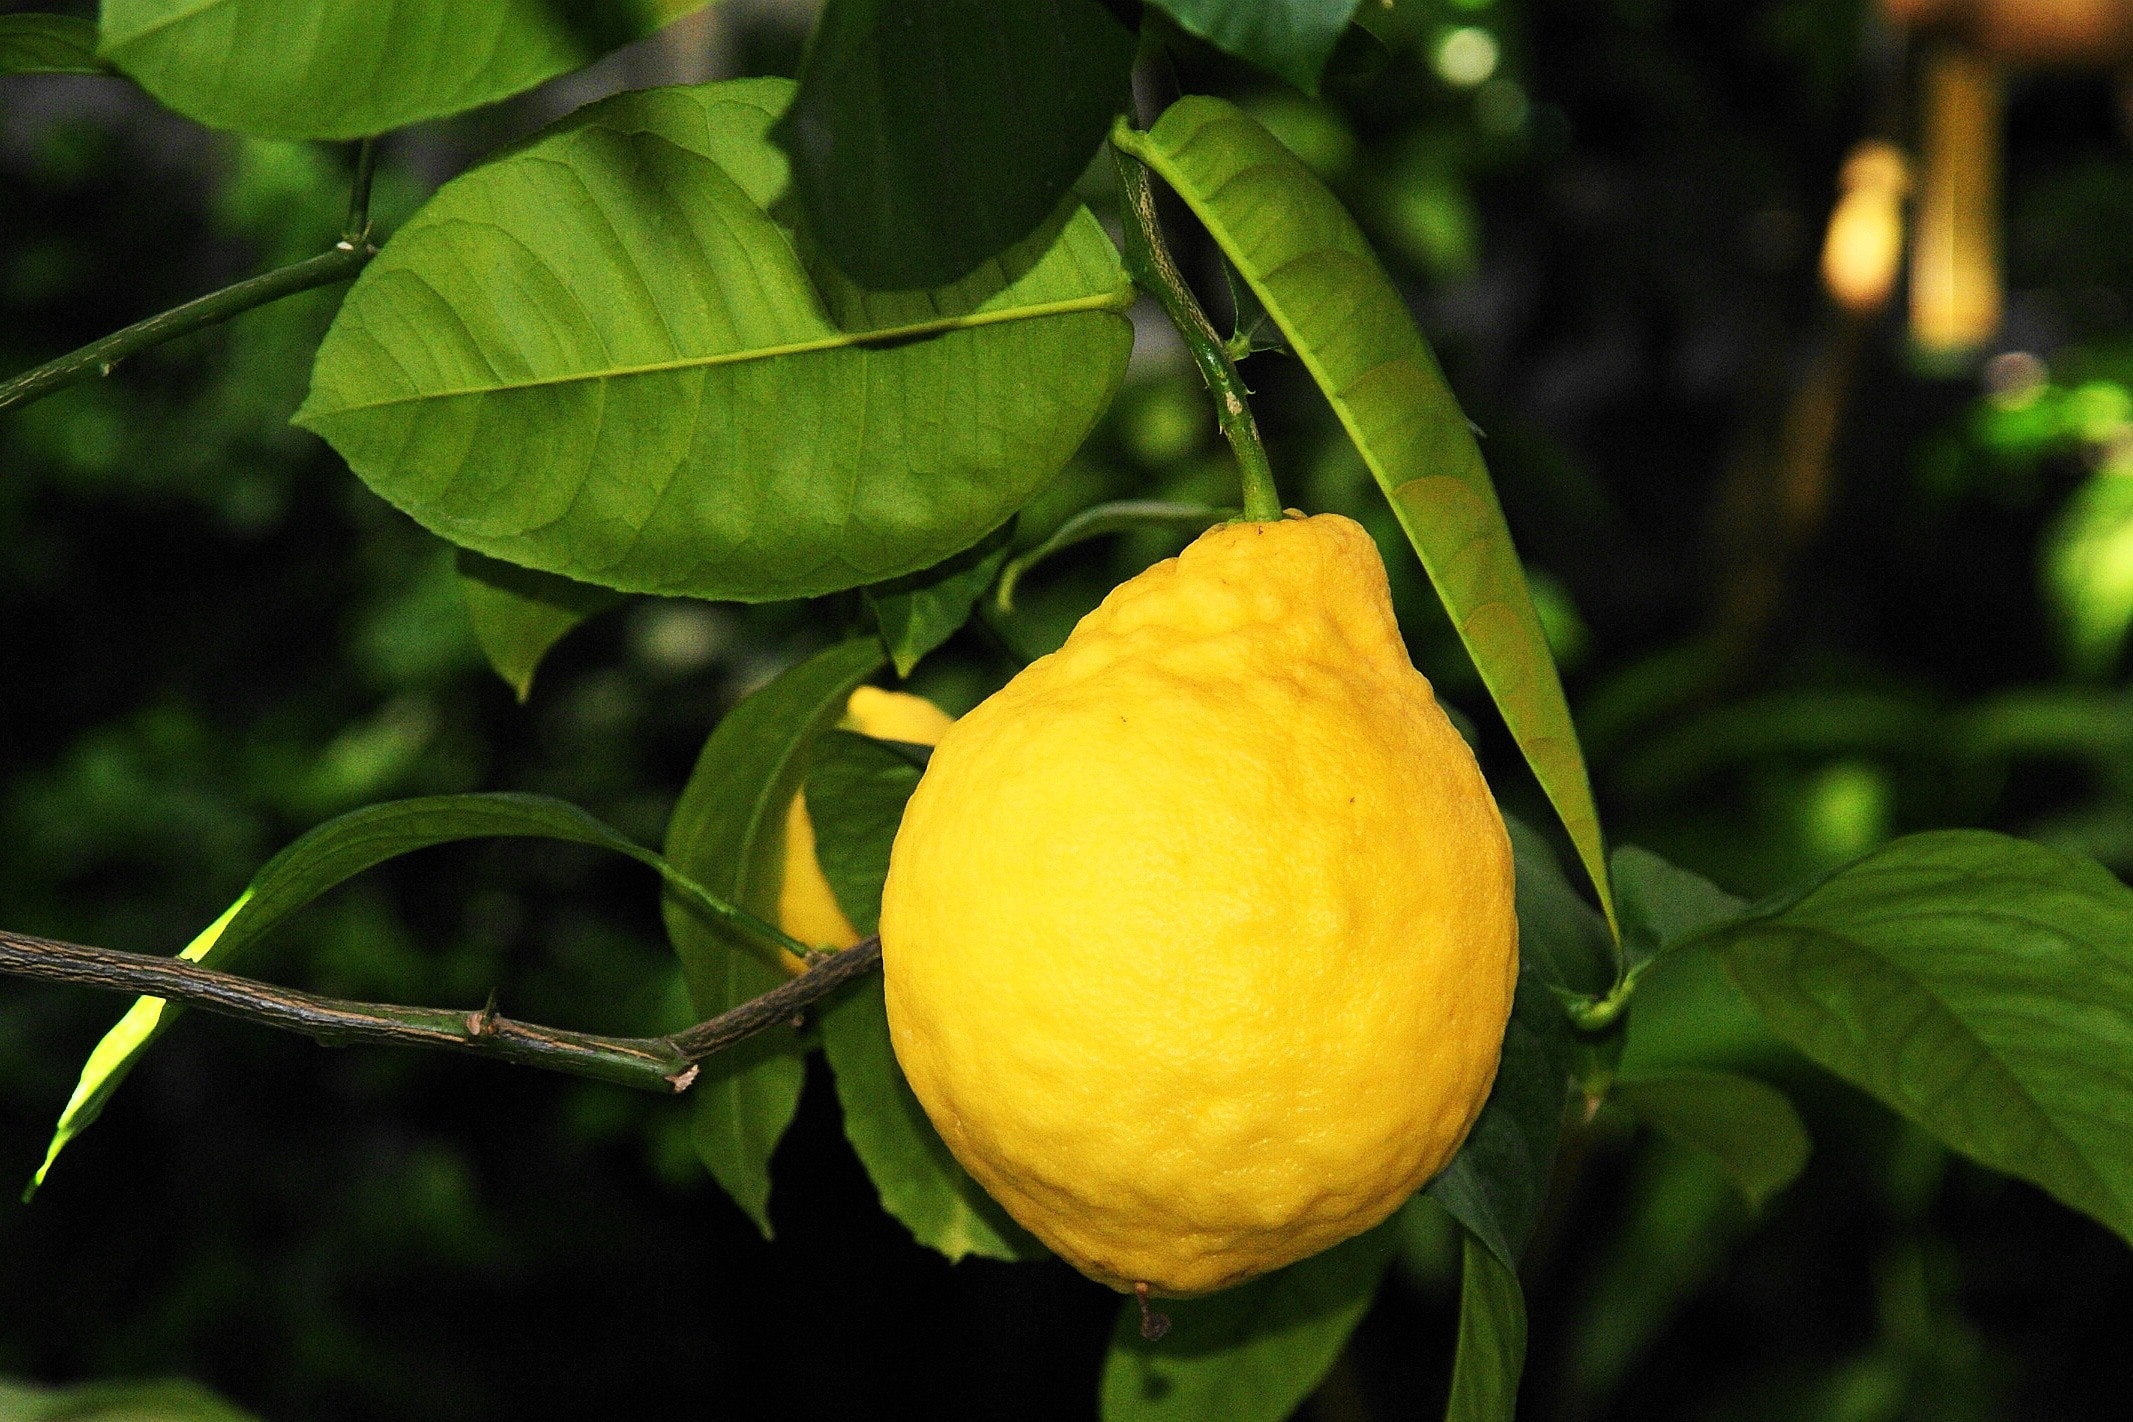 Vitamins, Botanical Garden, Lemon, Fruit, food and drink, leaf